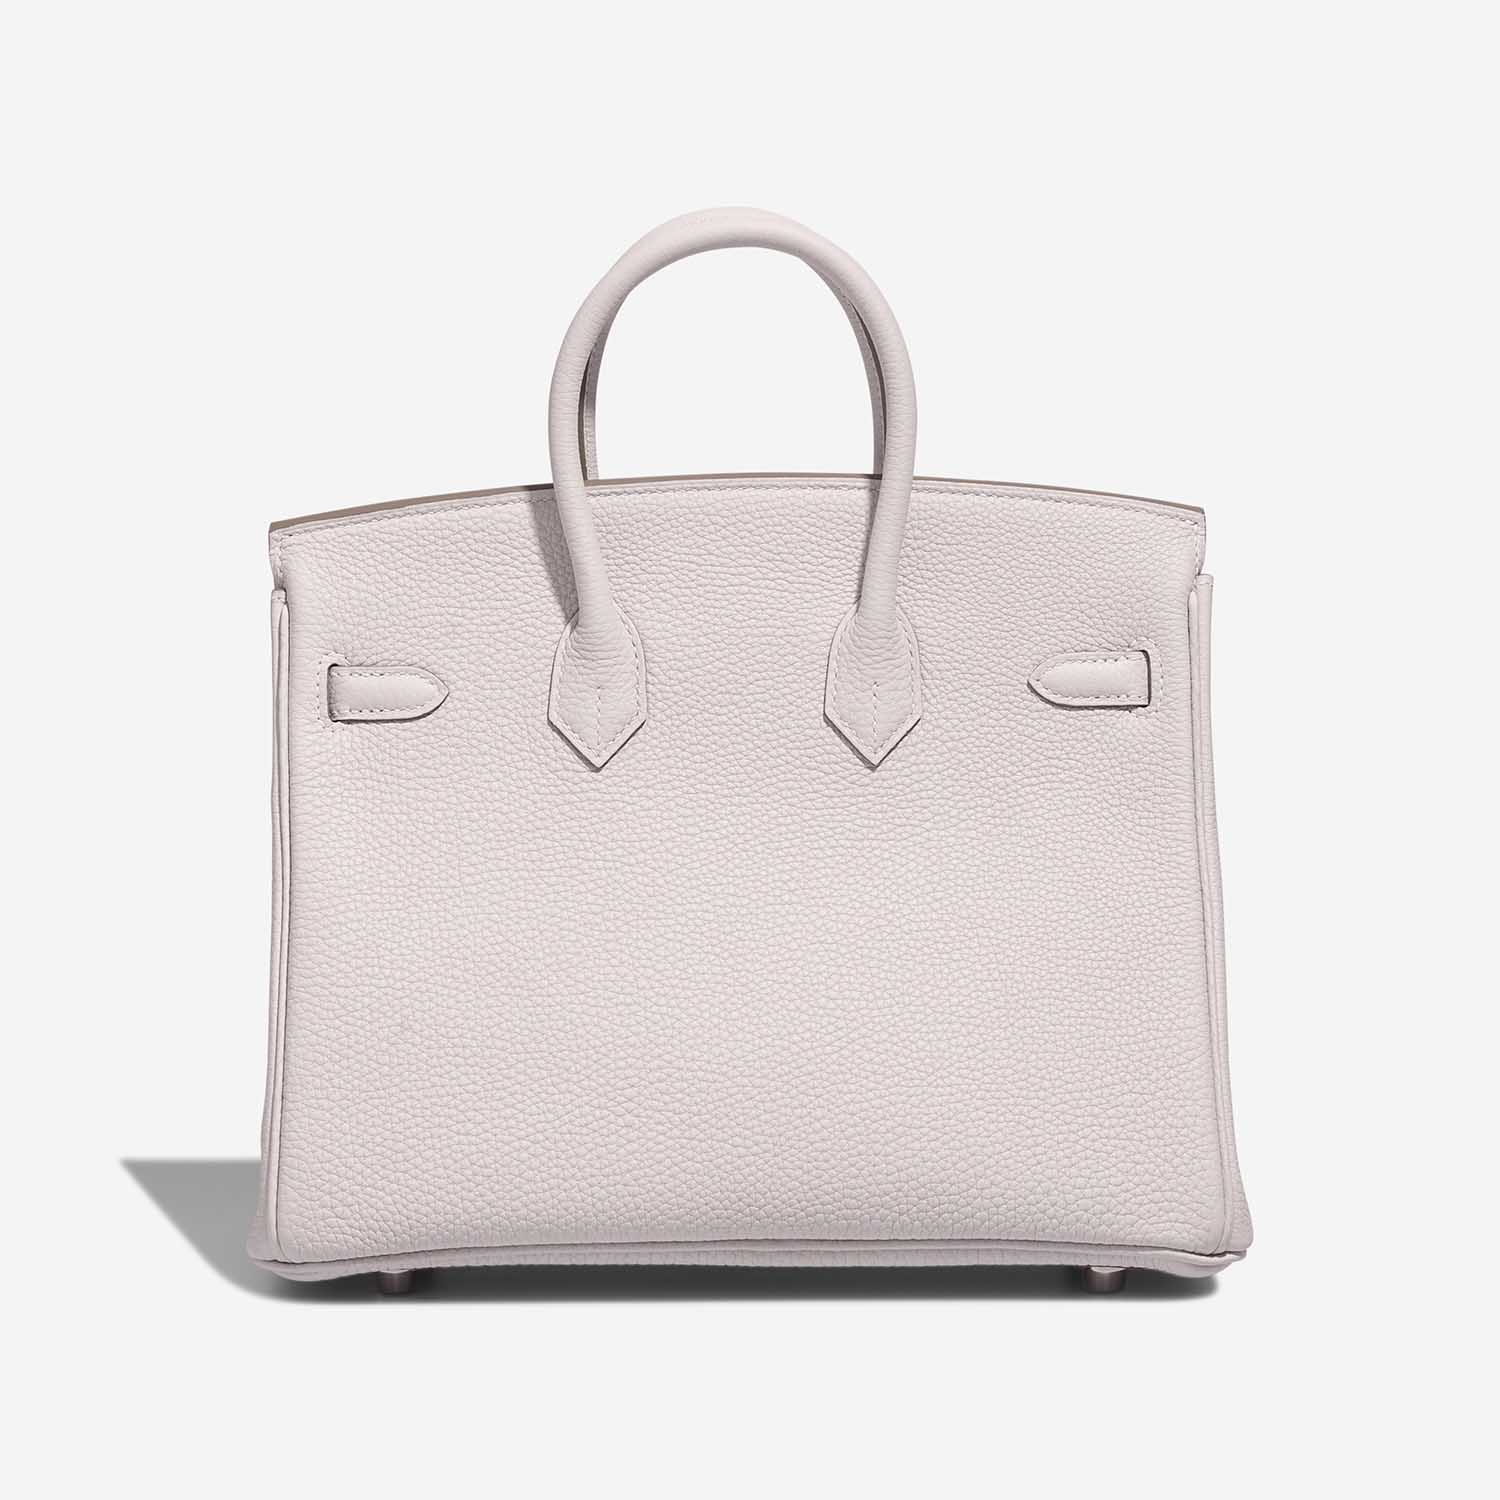 Hermès Birkin 25 GrisPale Back | Verkaufen Sie Ihre Designertasche auf Saclab.com